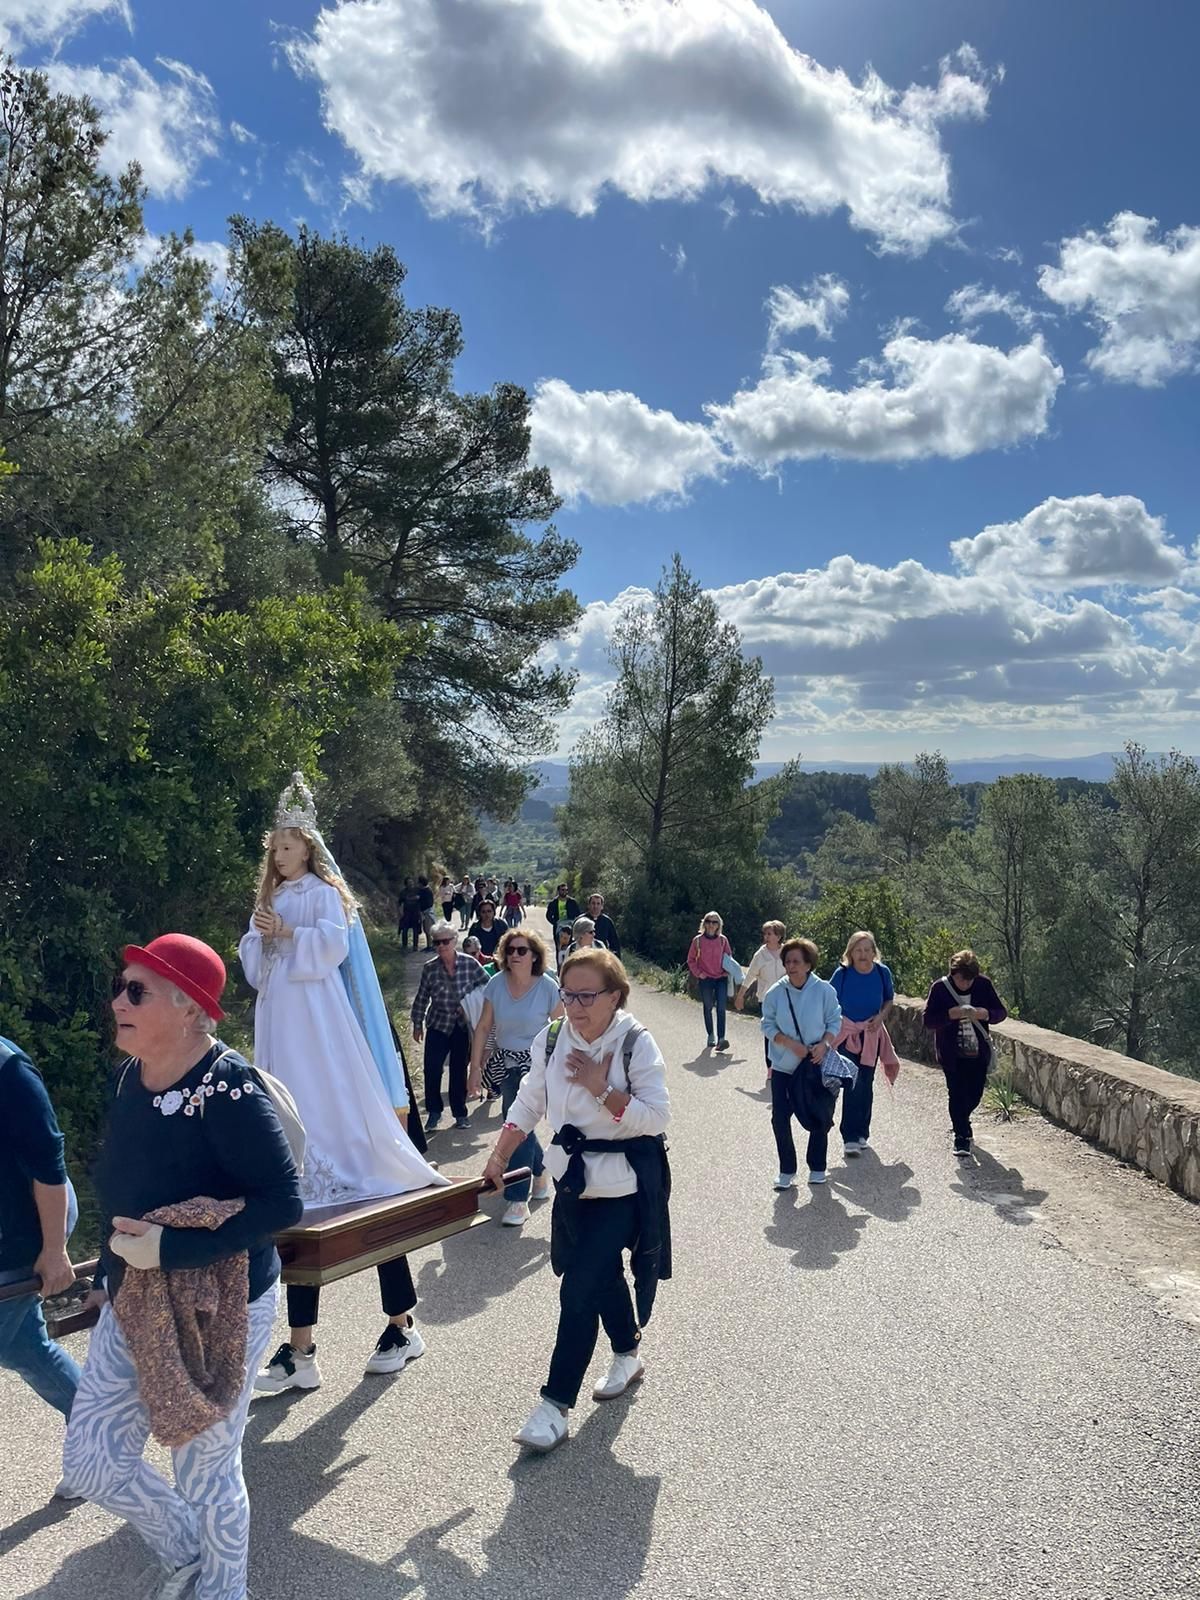 Osterntradition auf Mallorca: Eindrücke von den Mini-Wallfahrten "Pancaritats"